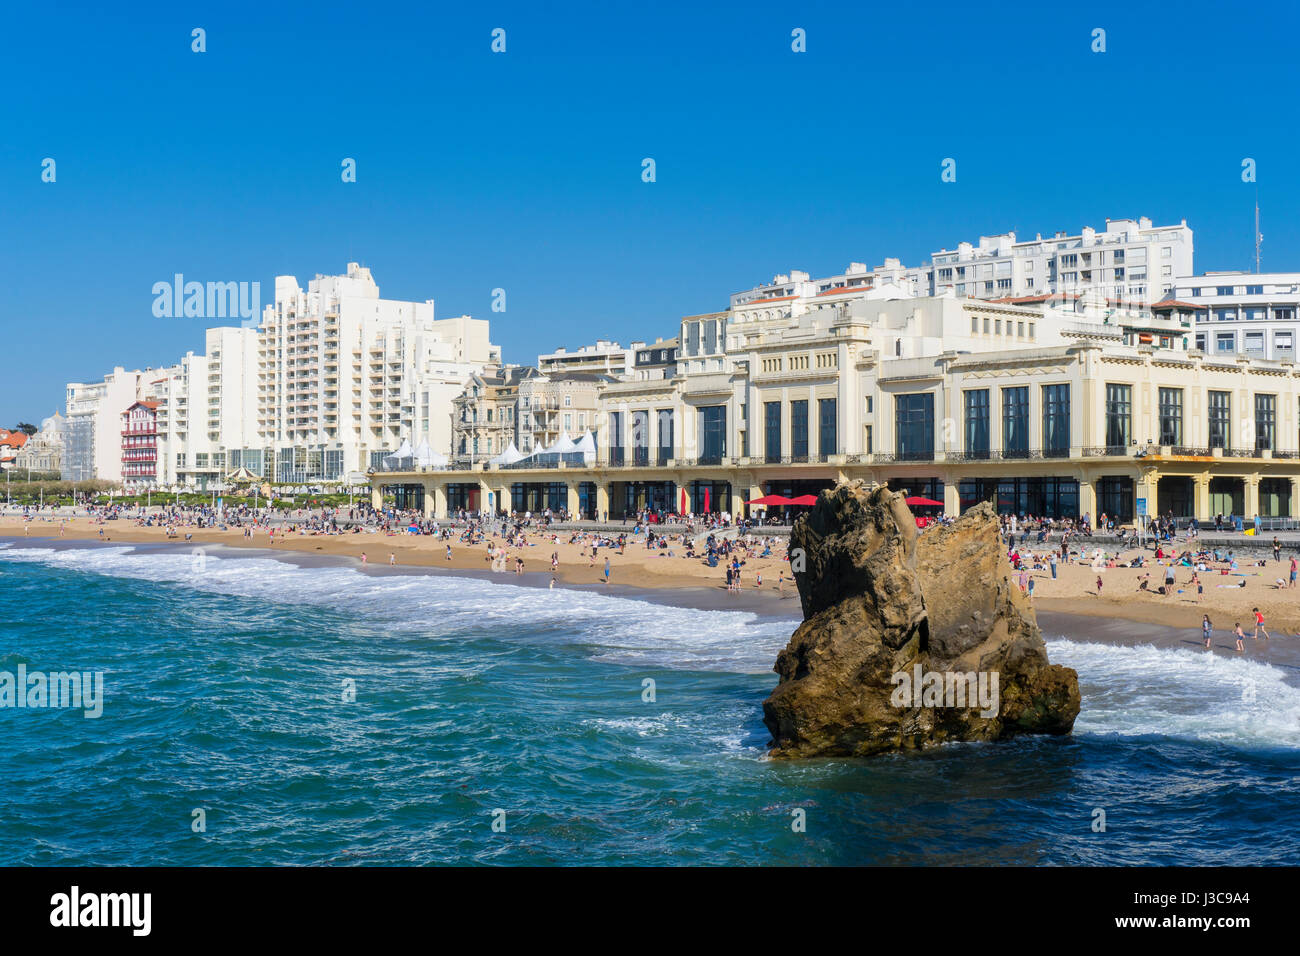 Beach scene in Biarritz Grande Plage in France Stock Photo